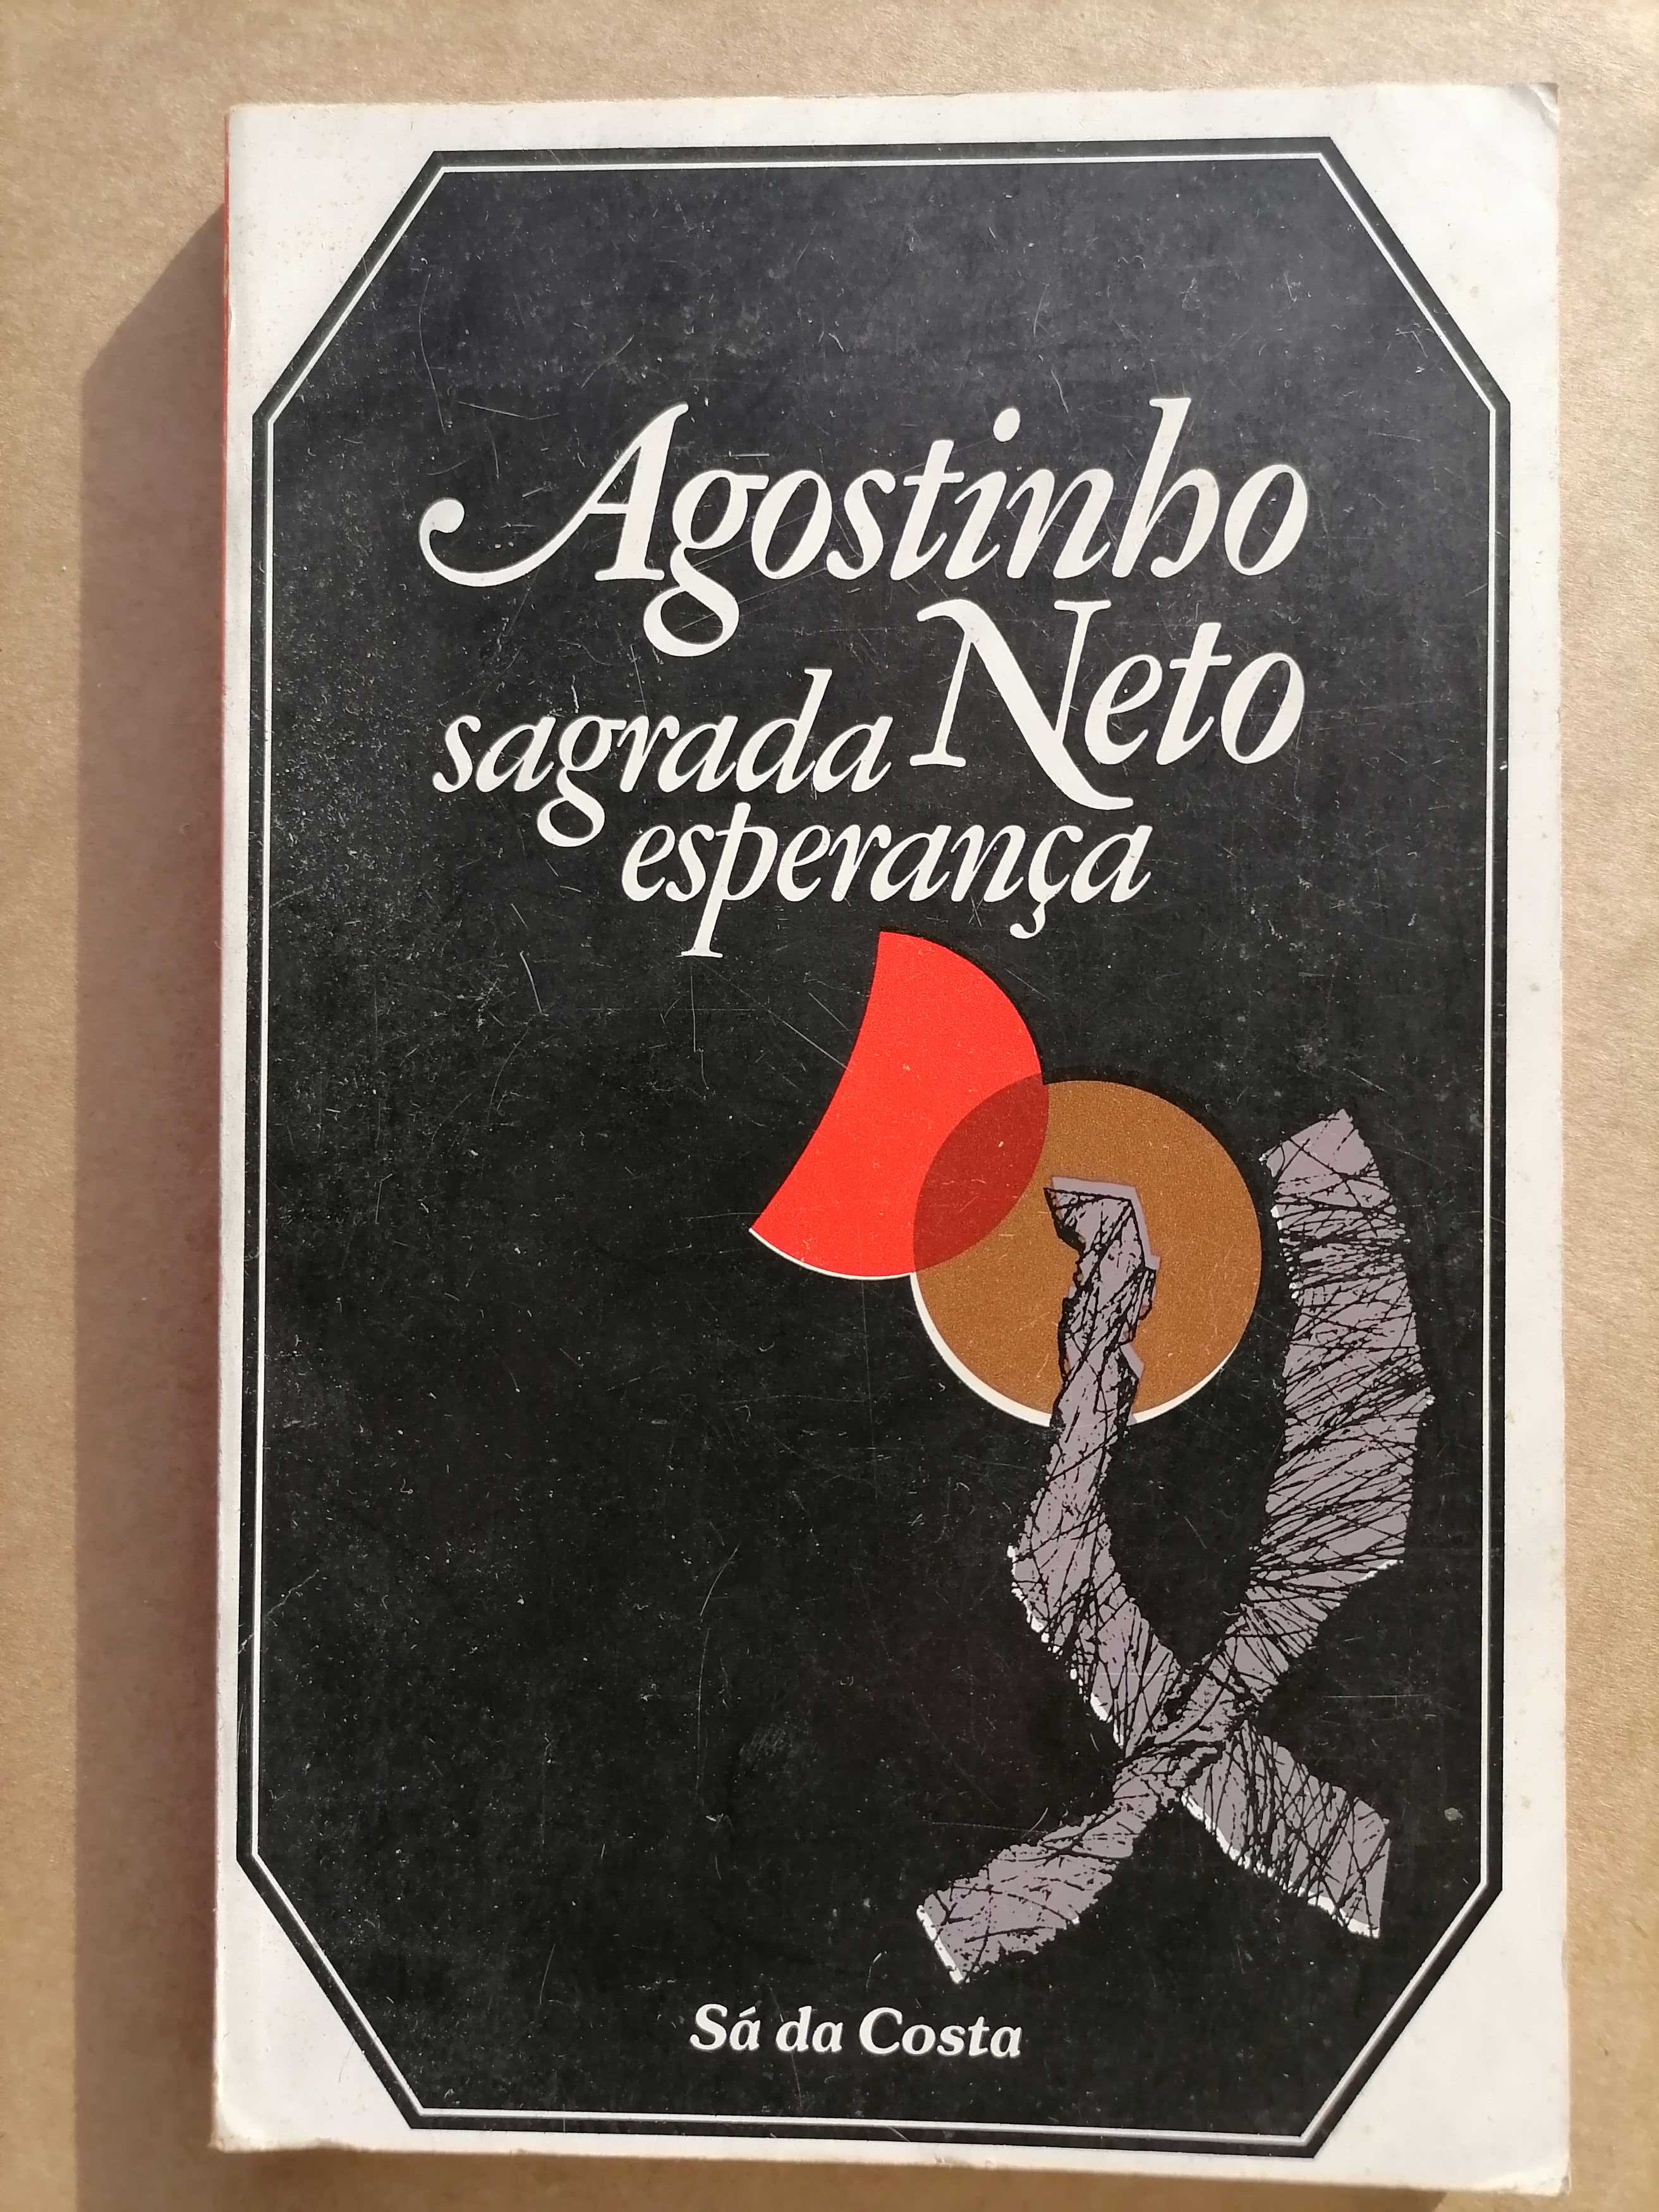 Livro Agostinho Neto - Sagrada Esperança 1ª Edição 1974 (Sá da Costa)